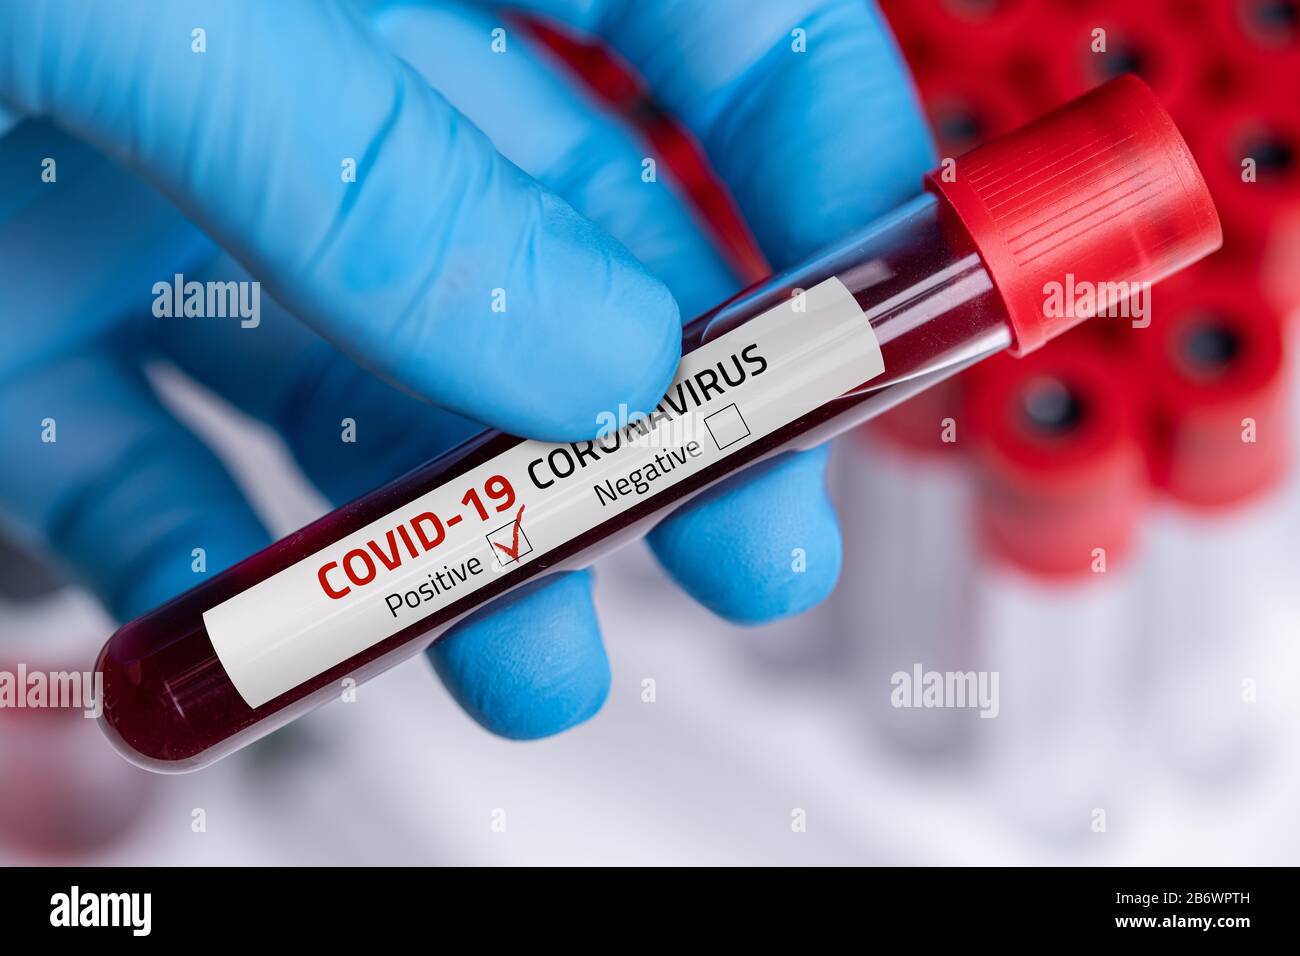 Campione Di Sangue Di Coronavirus 2019-Ncov. Il virus Corona è in uscita. Virus Epidemico Sindrome Respiratoria. Foto Stock